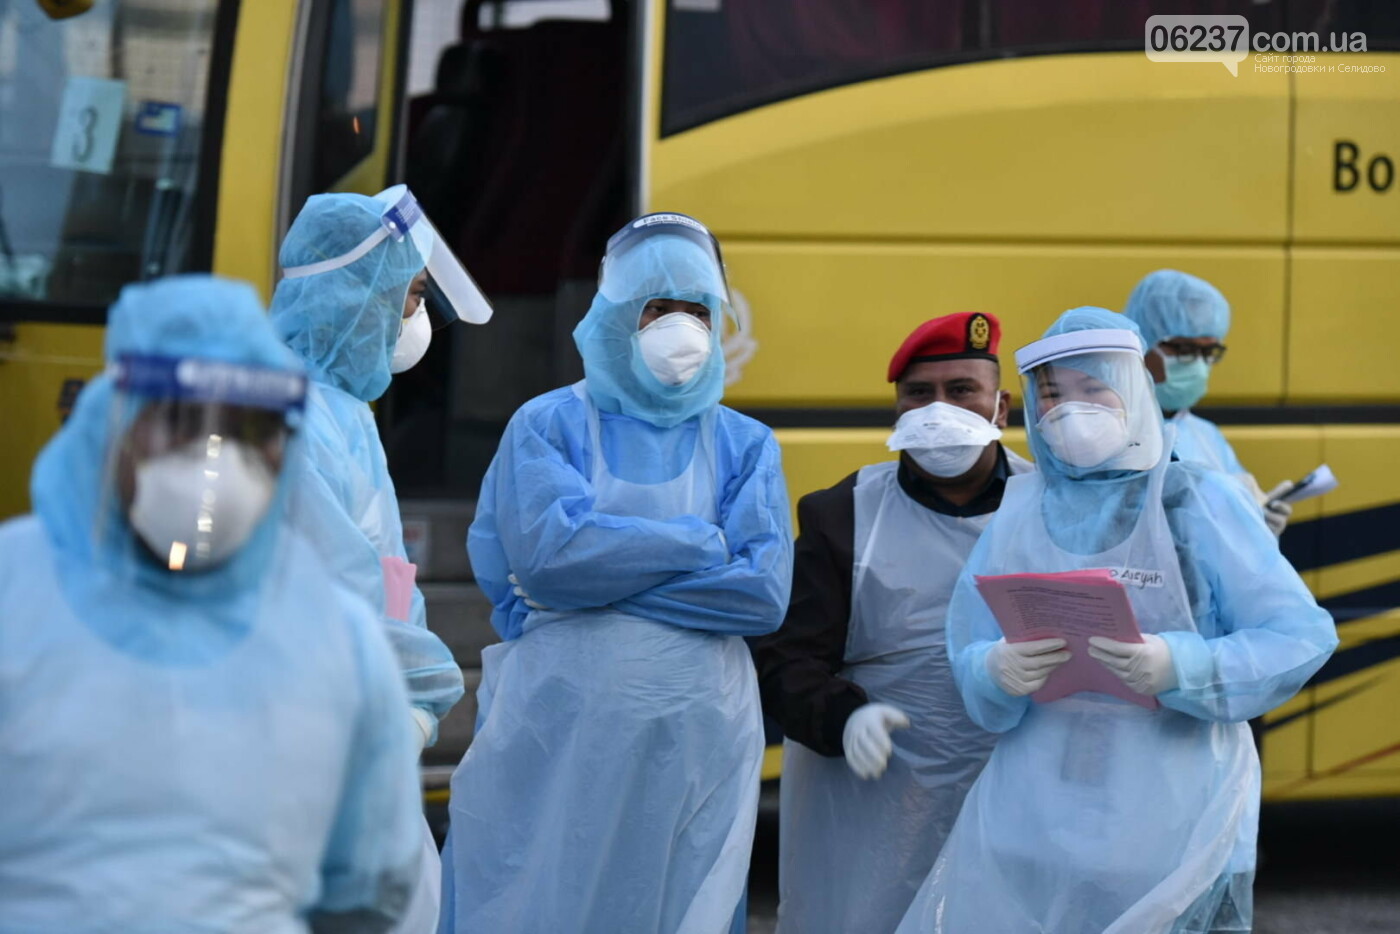 Китаец заразился коронавирусом на рынке за 15 секунд - СМИ, фото-1